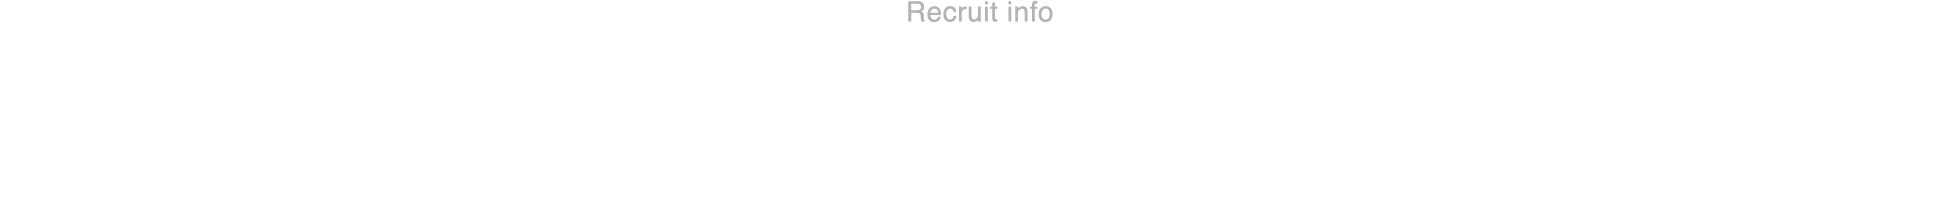 募集要項 Recruit info